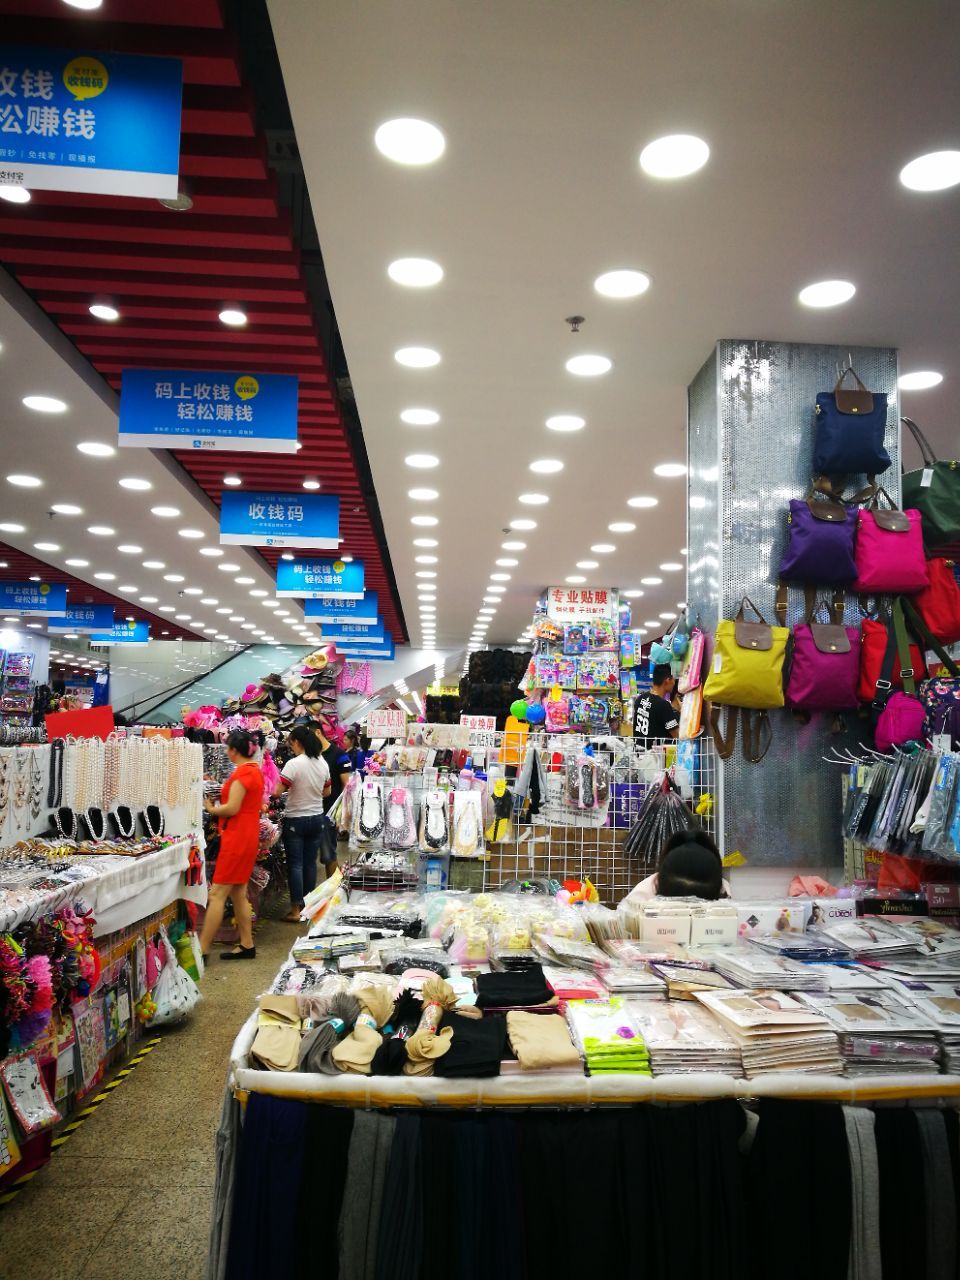 【携程攻略】深圳女人世界(华强北路)购物,这里的小是